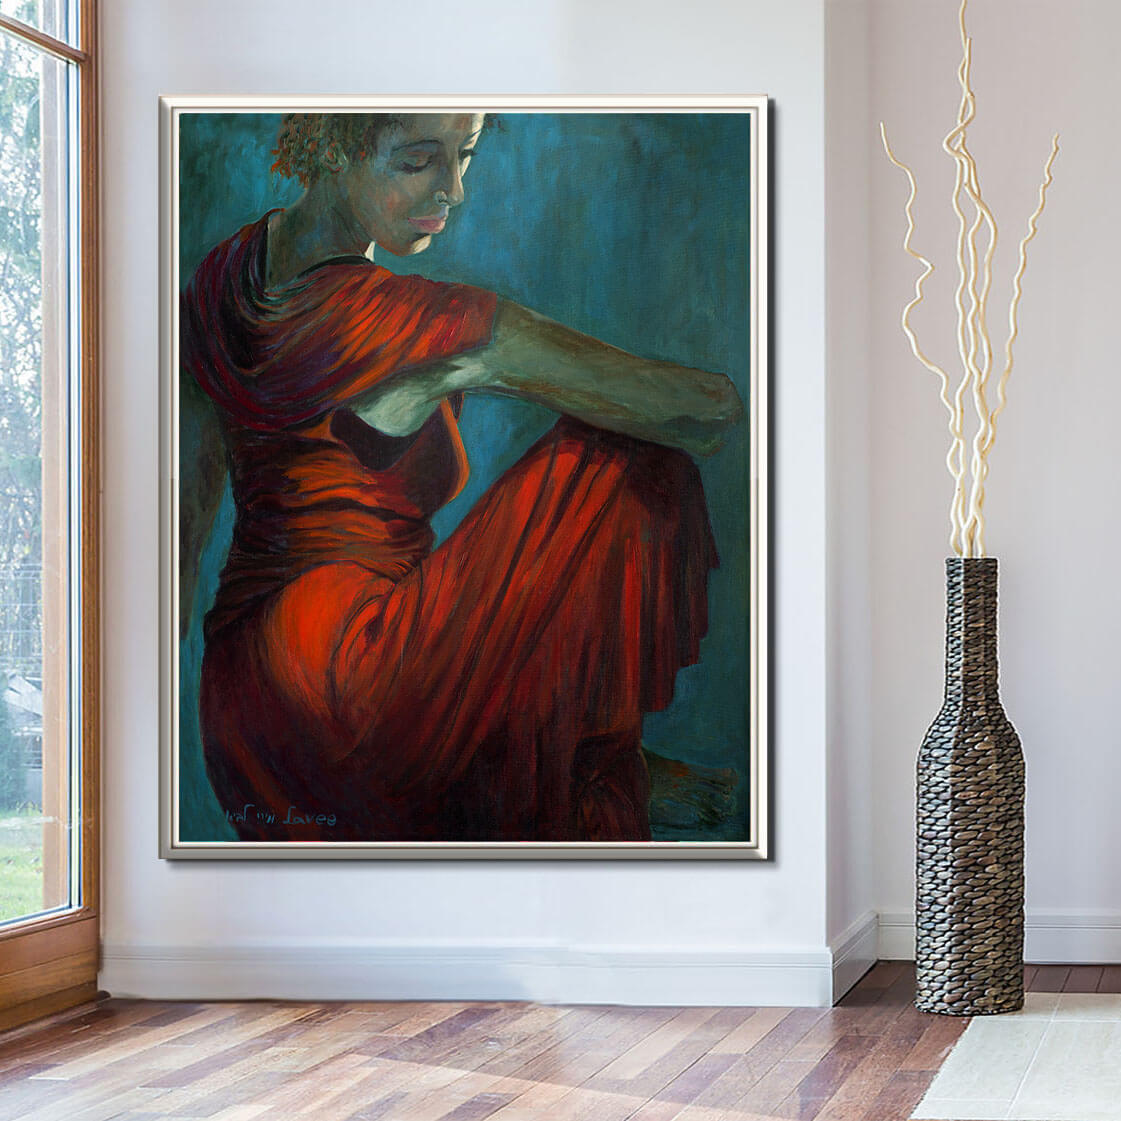 ציור אישה יושבת בשמלה אדומה הכתף והירך מוארים בעוד פניה בצל תמונה גדולה על קיר שלם בסלון ציירת מירי לביא